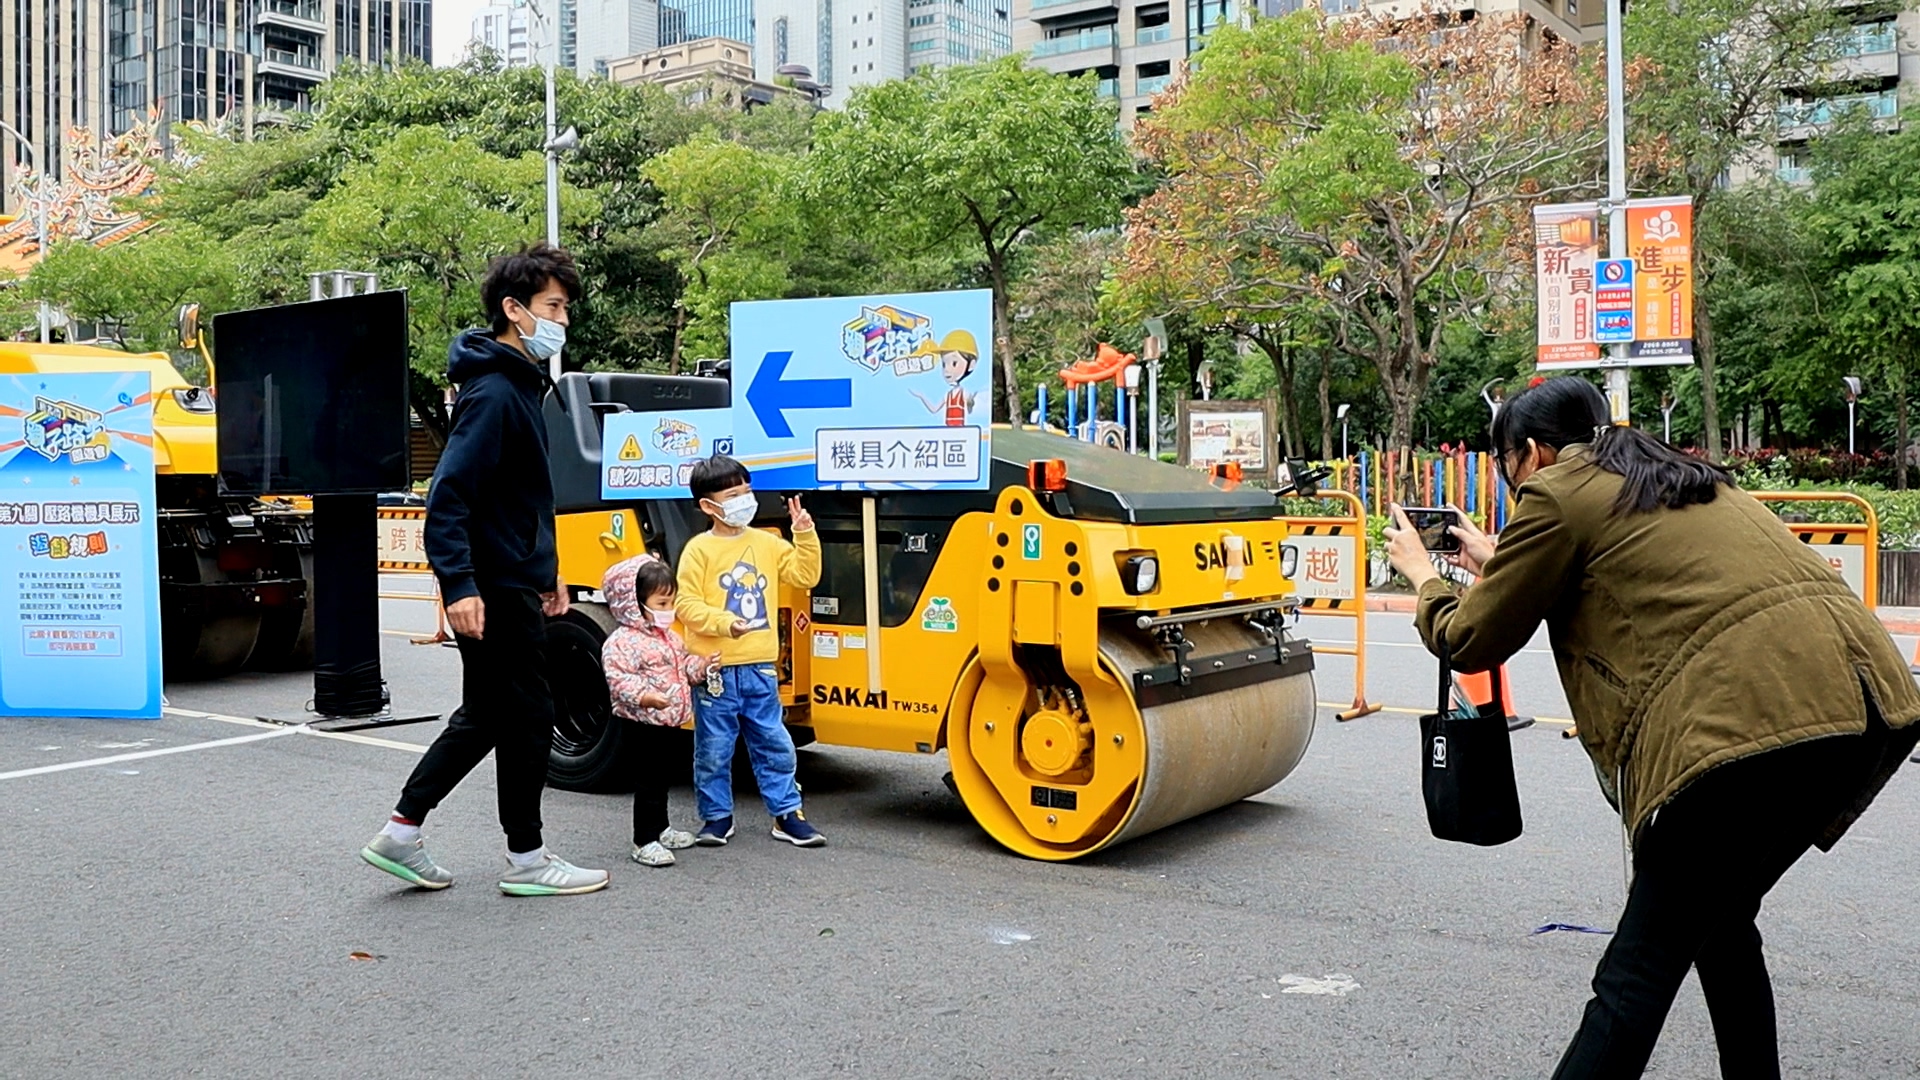 路平園遊會中特別展示鋪路時才會出動的大型施工機具車，提供大小朋友們近距離接觸及合影。